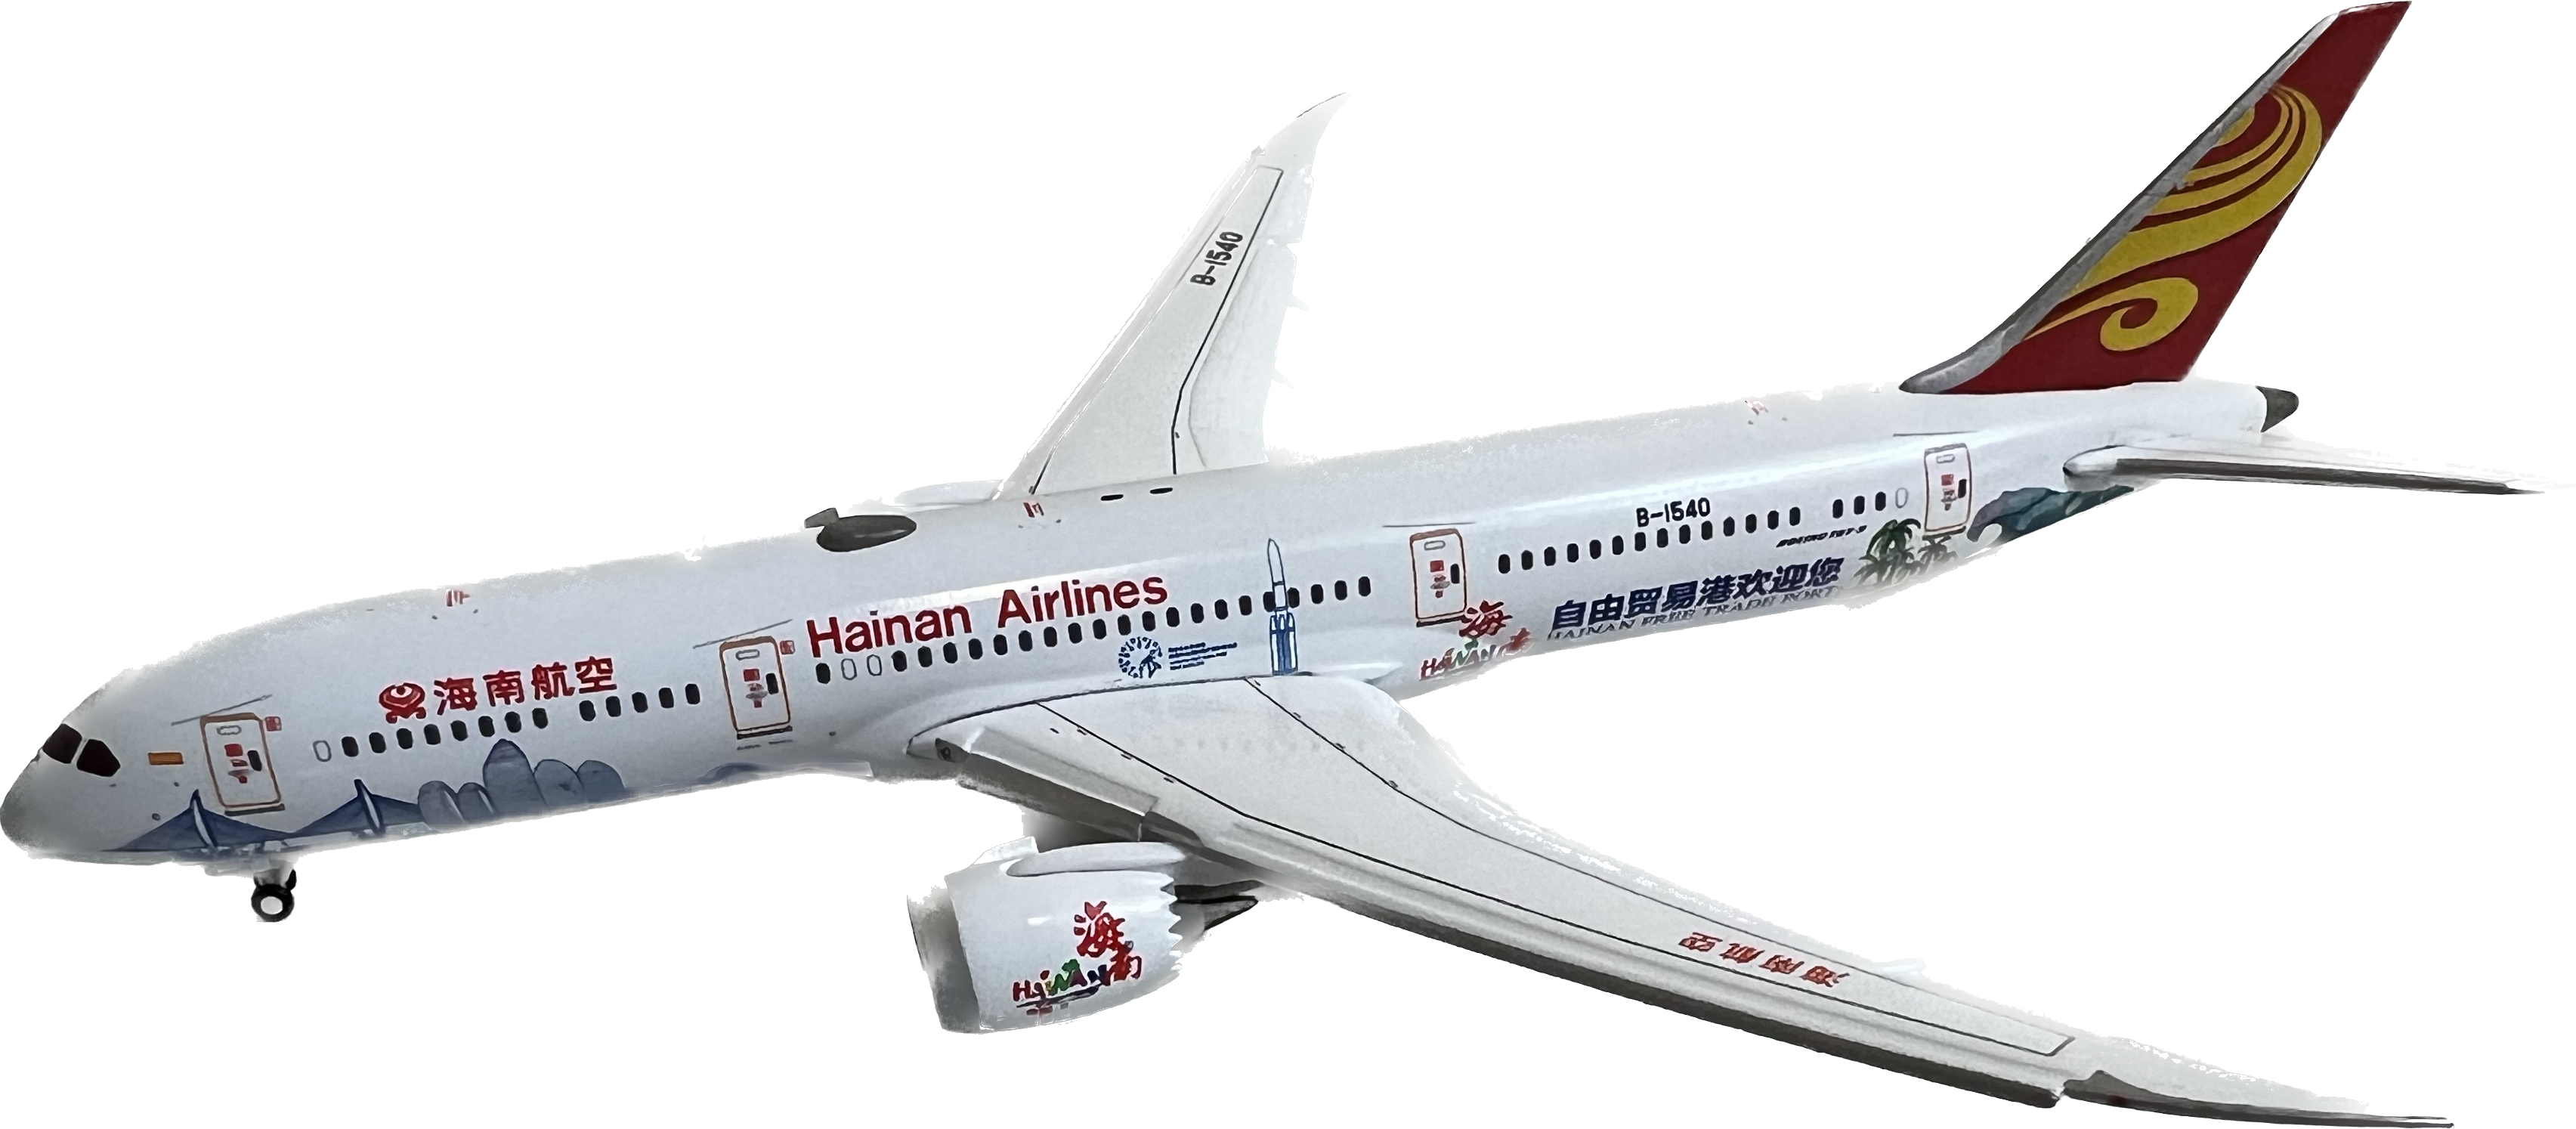 Flaps down Hainan Boeing 787-9 B-1540 海南航空 